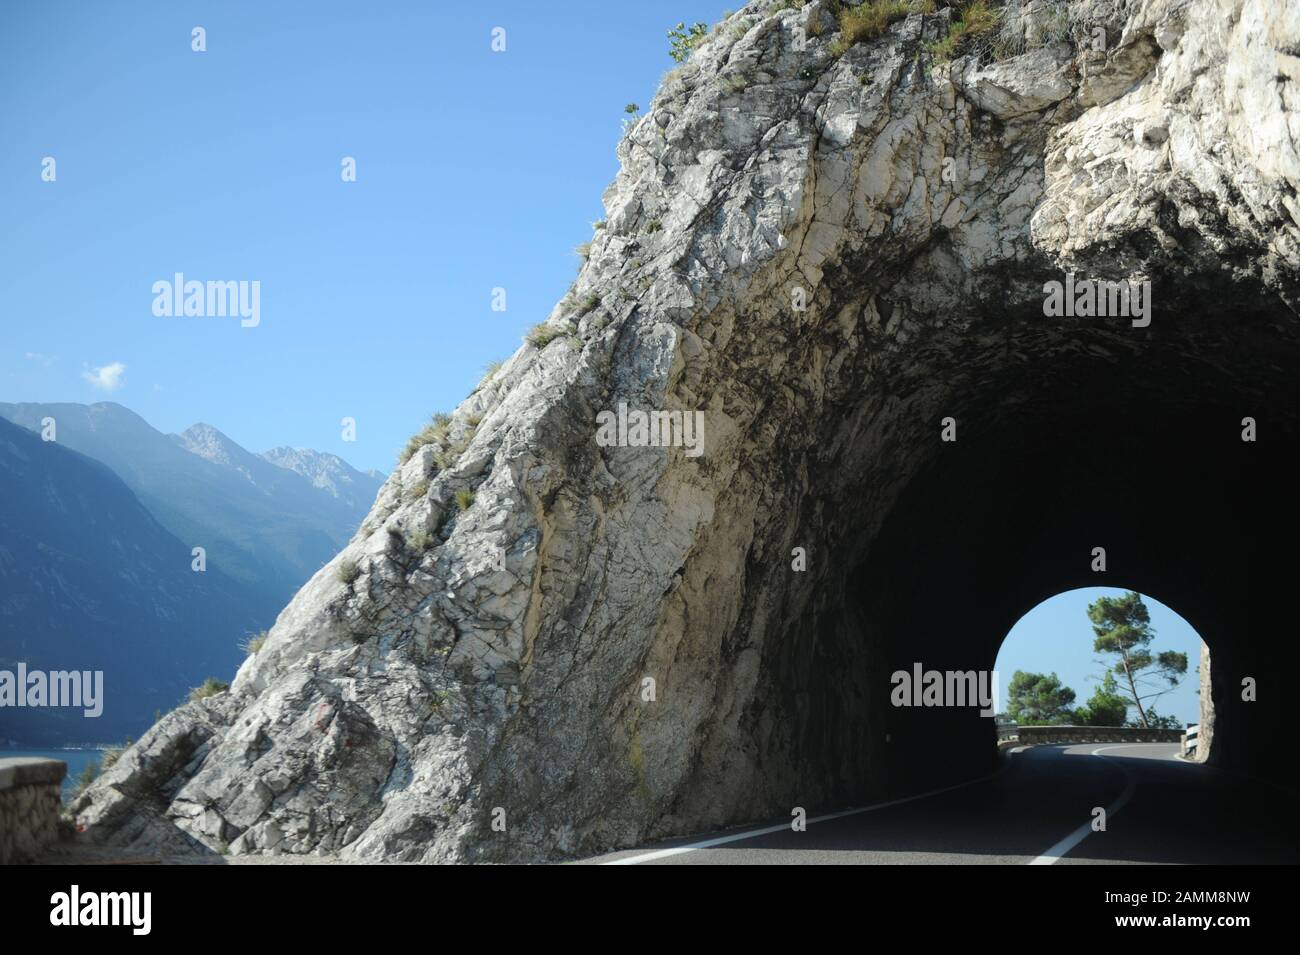 Route étroite de montagne près de Tremosine (Pieve) sur la route côtière de Riva del Garda à Salò sur le lac de Garde. [traduction automatique] Banque D'Images